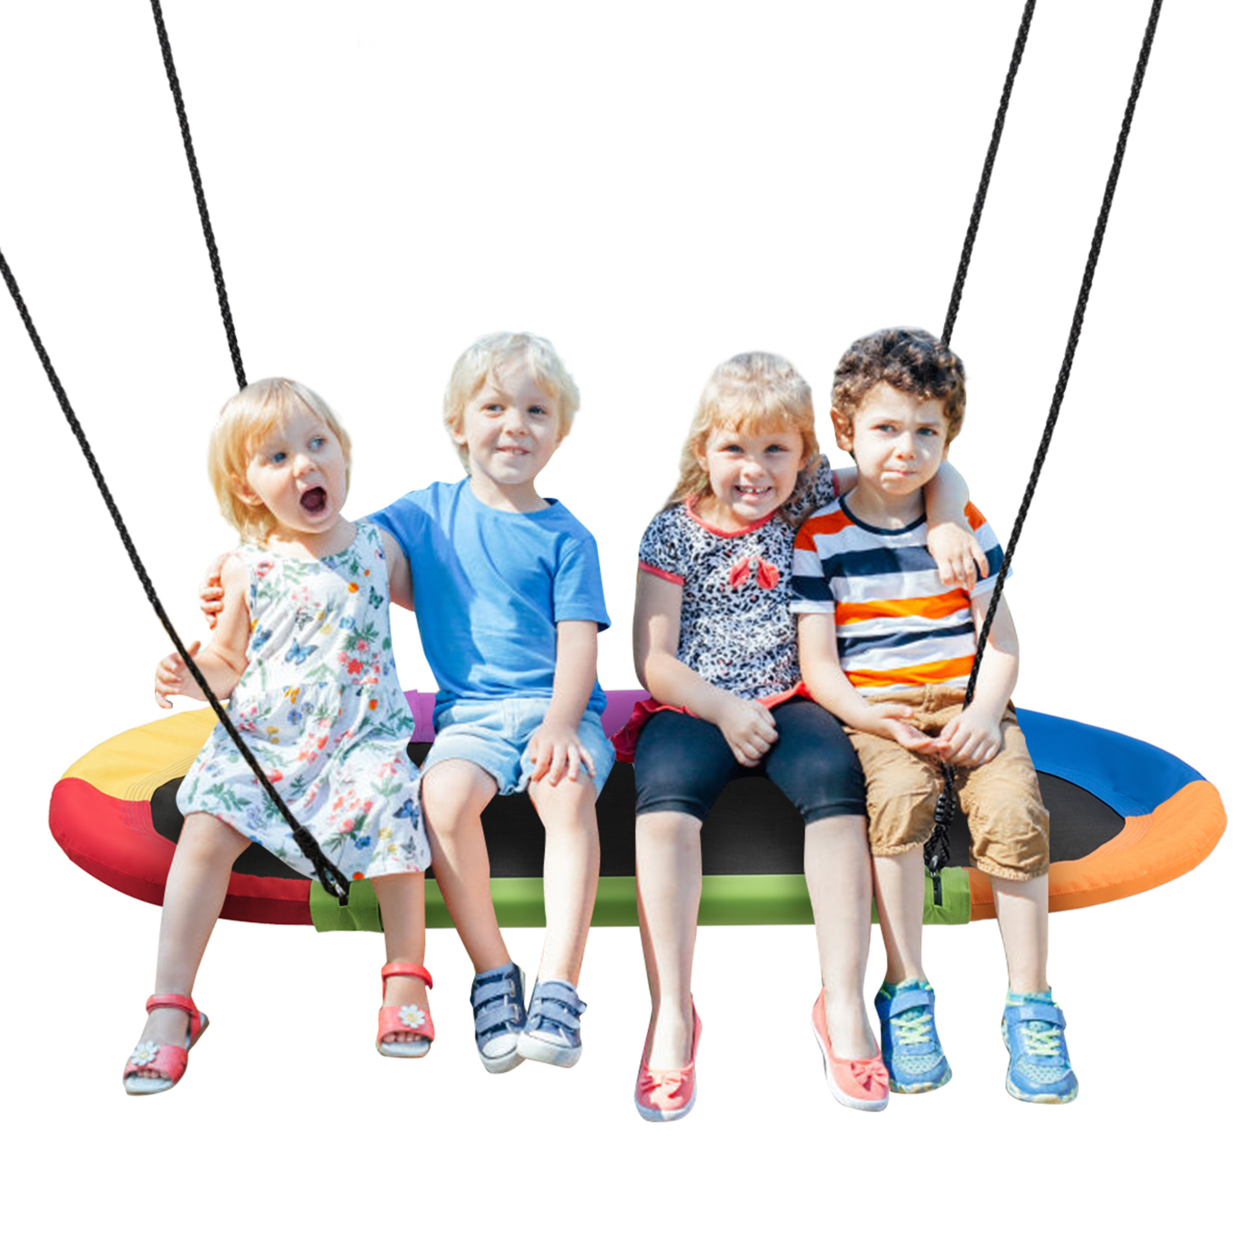 60'' Saucer Tree Swing Surf Outdoor Adjustable Kids Giant Oval Platform Swing Set - Colorful